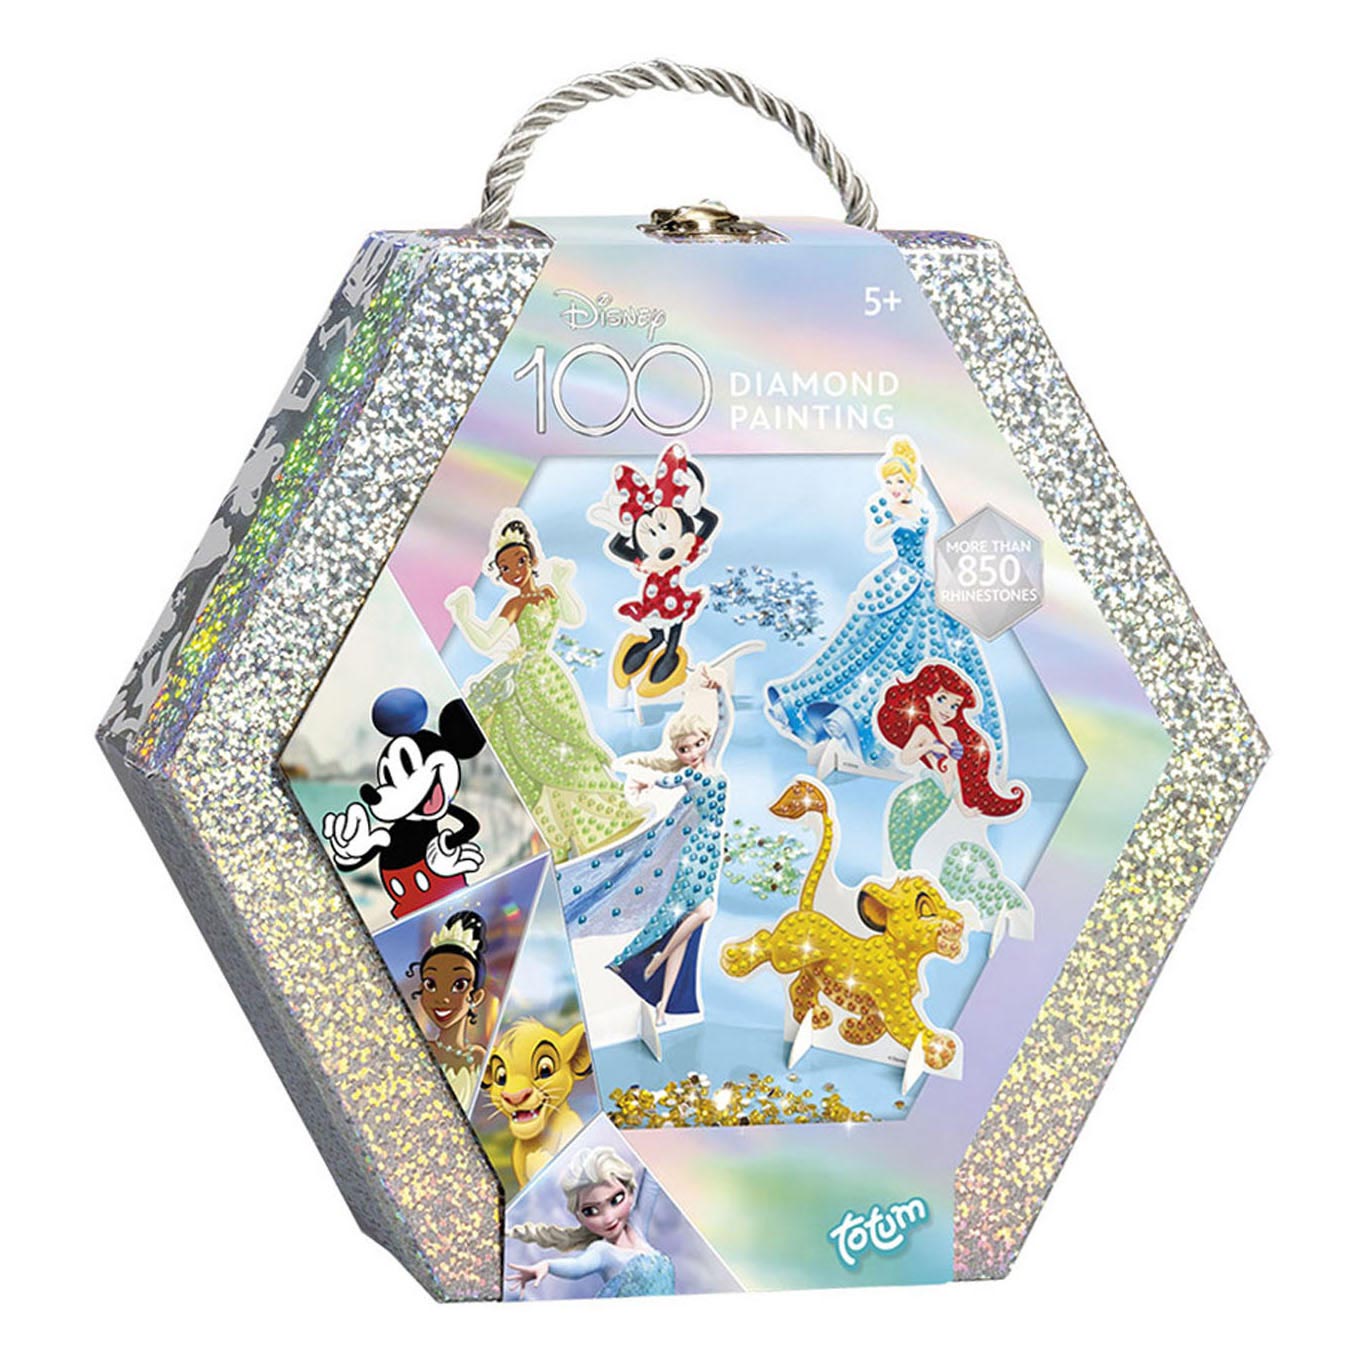 Totum Disney 100 - Peinture diamant